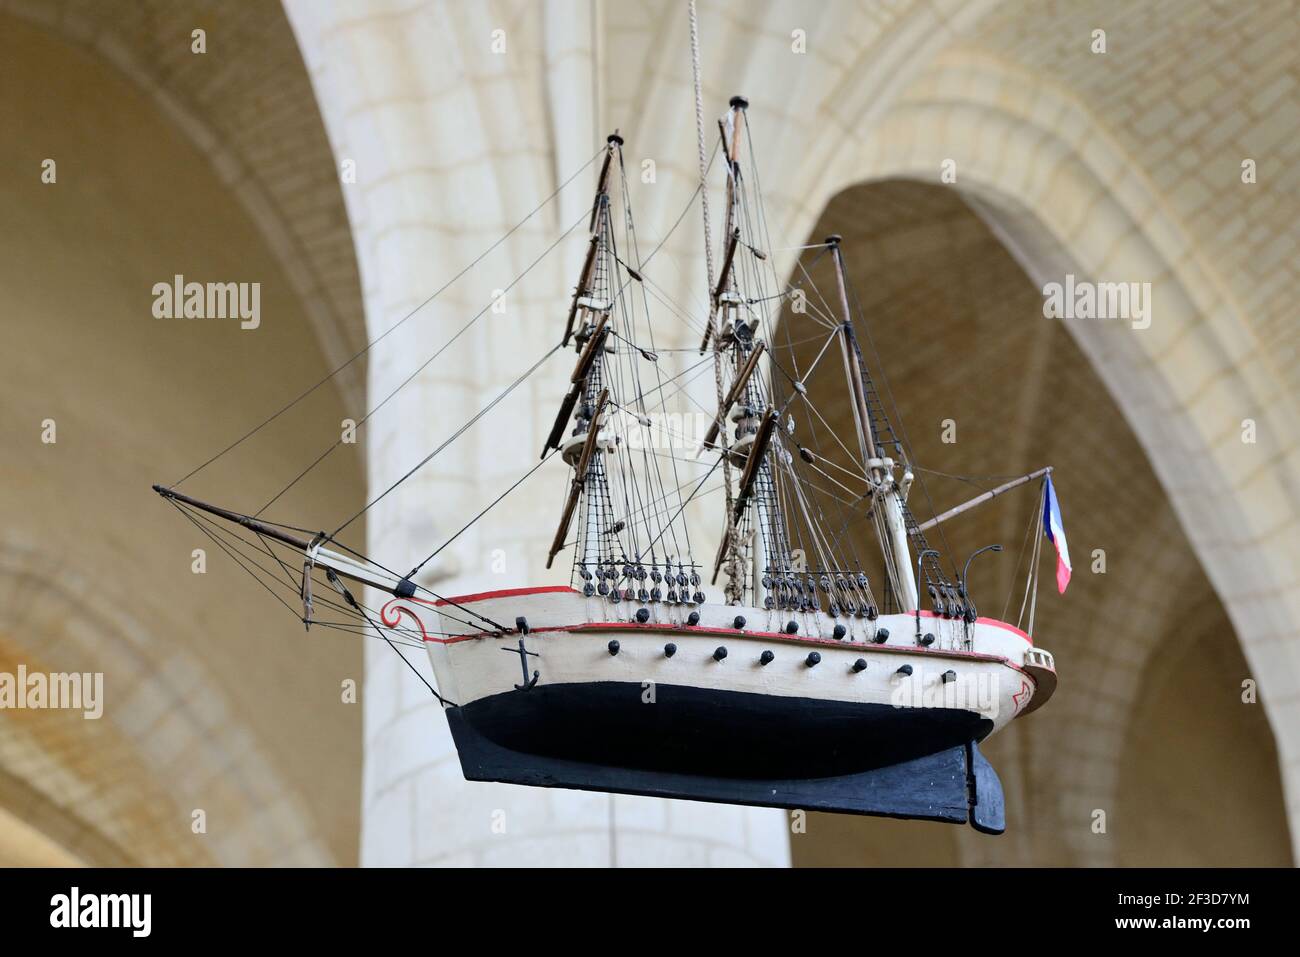 Esnandes (Zentral-West-Frankreich): Ex-voto, das ein Boot, das Pandora-Segelboot, in der Kirche von Saint-Martin d'Esnandes darstellt Stockfoto